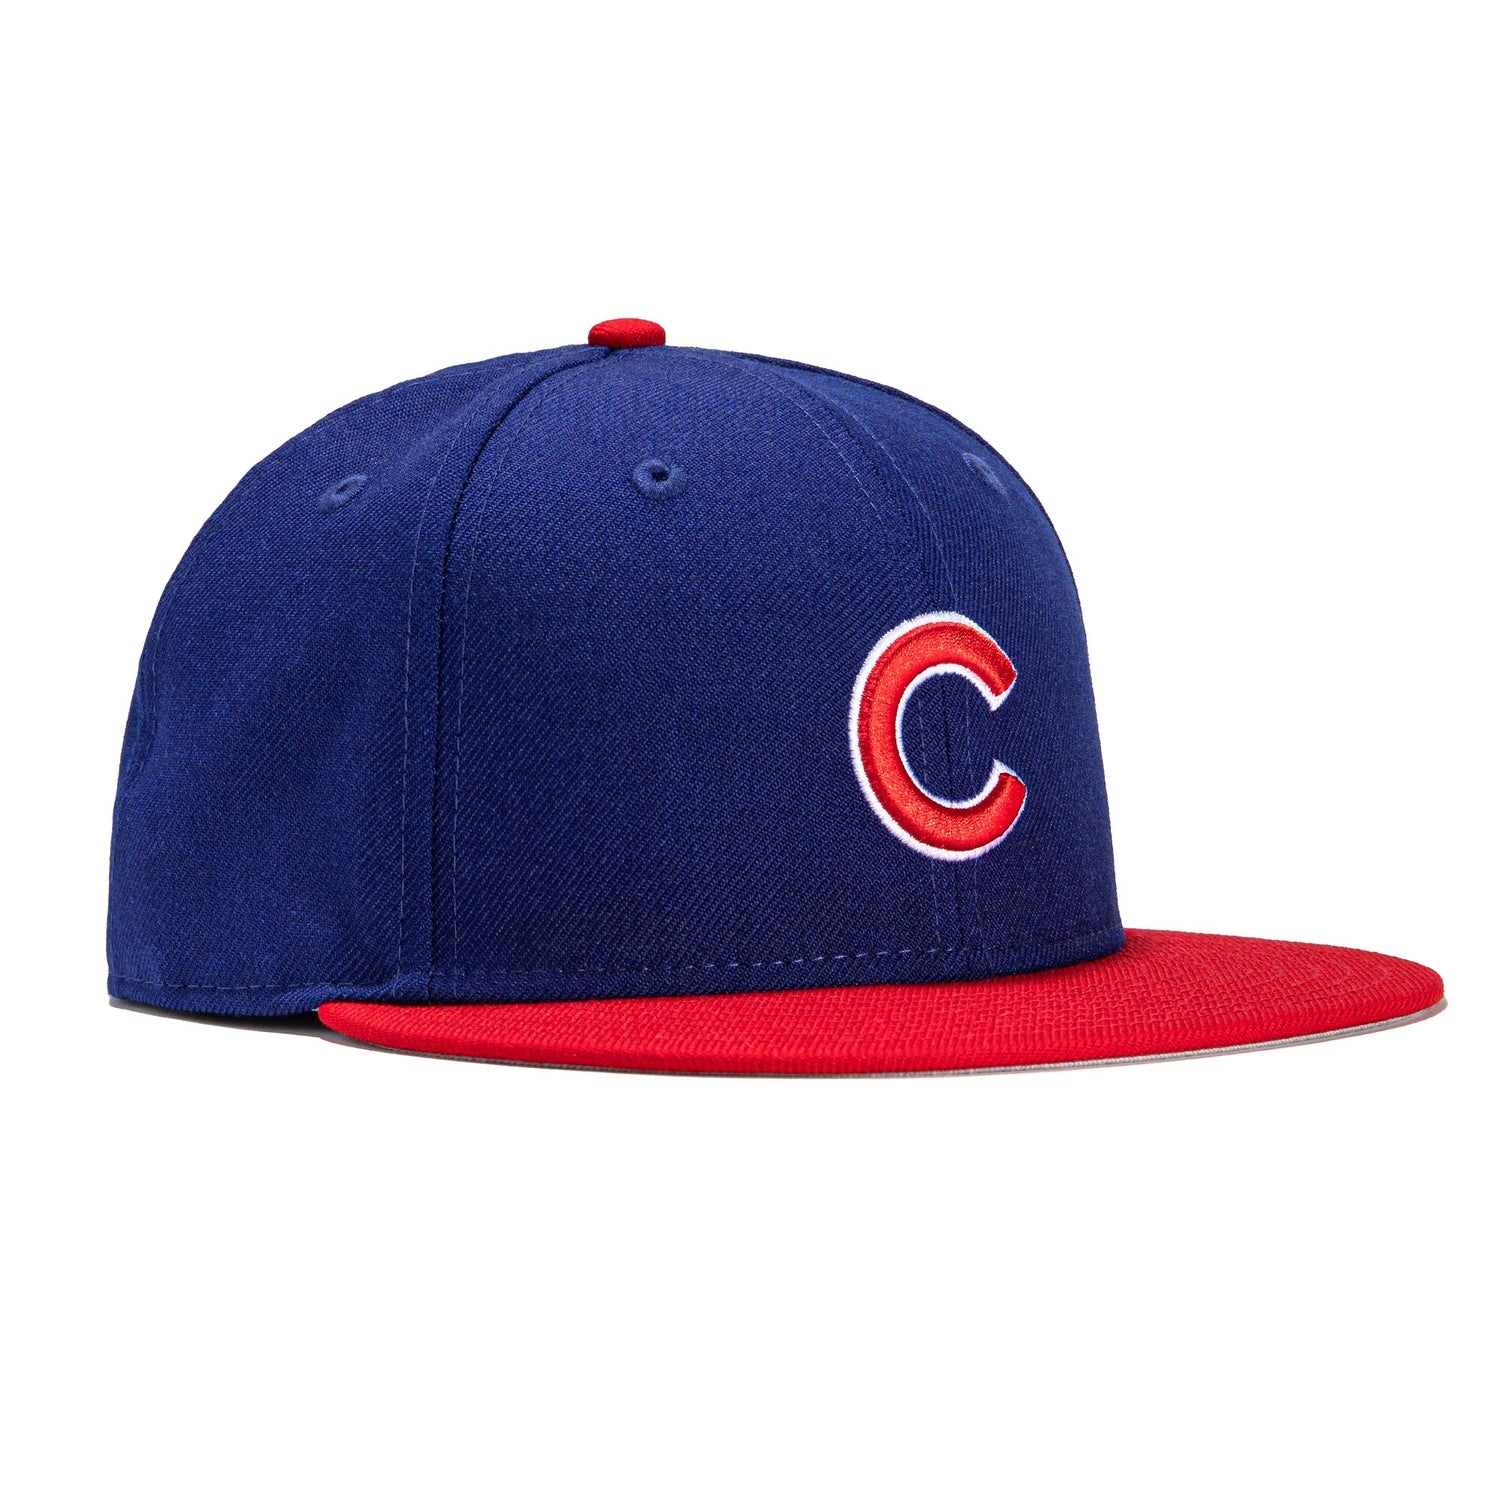 Vintage Logo 7 Chicago Cubs Hat Snapback Adjustable Hat One 